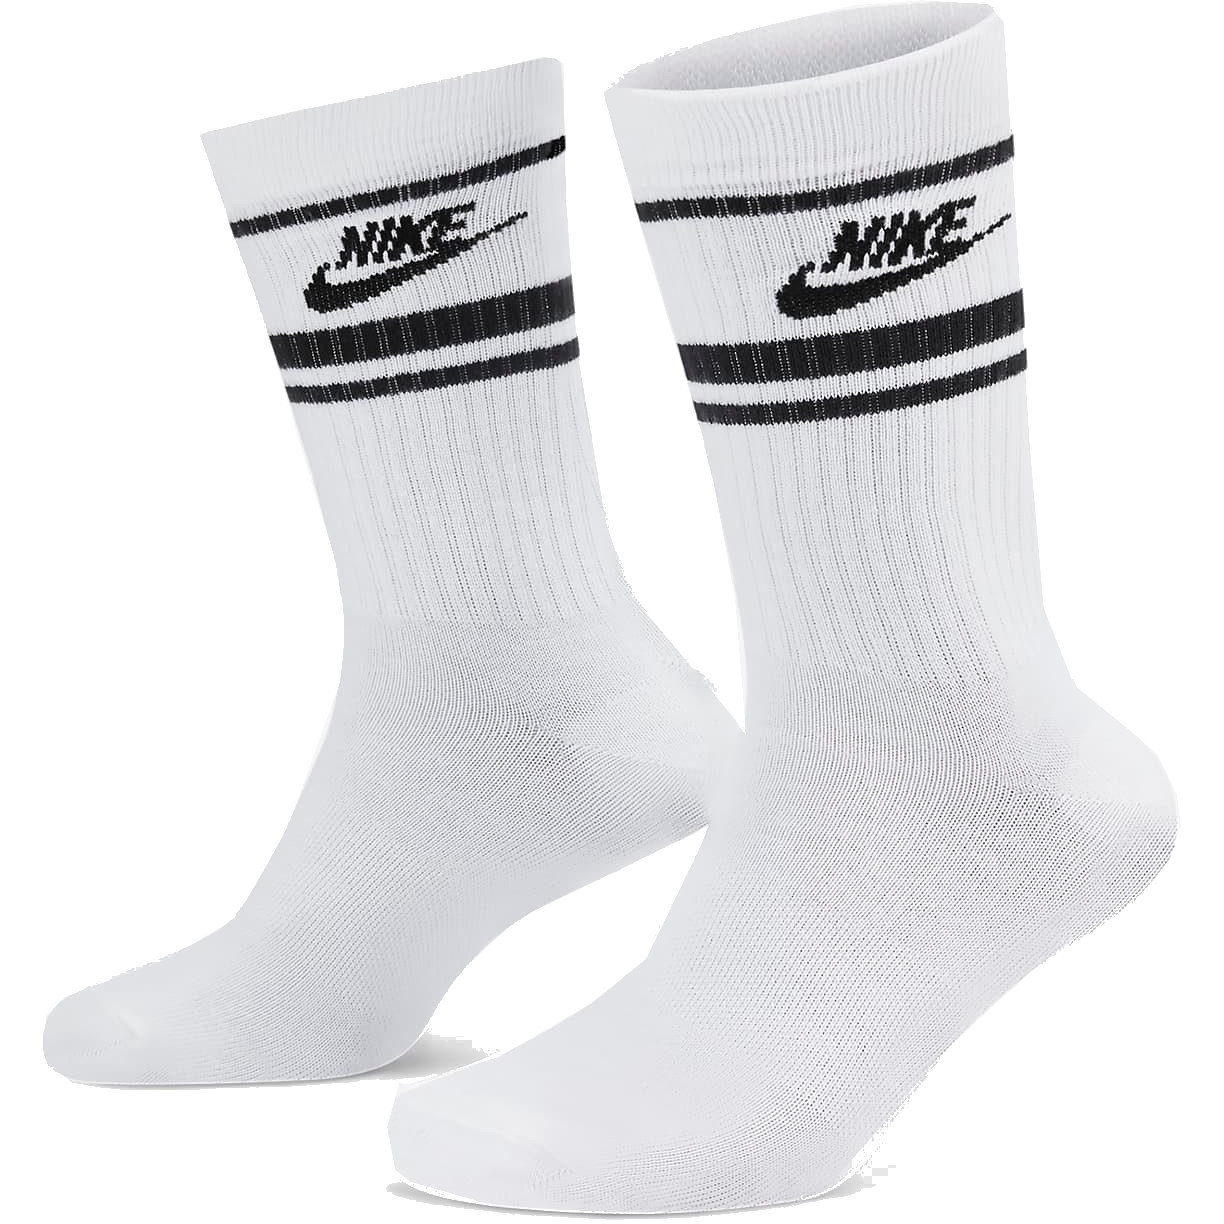 Bild von Nike Sportswear Everyday Essential Crew Socken (3 Paar) - weiss/schwarz/schwarz DX5089-103